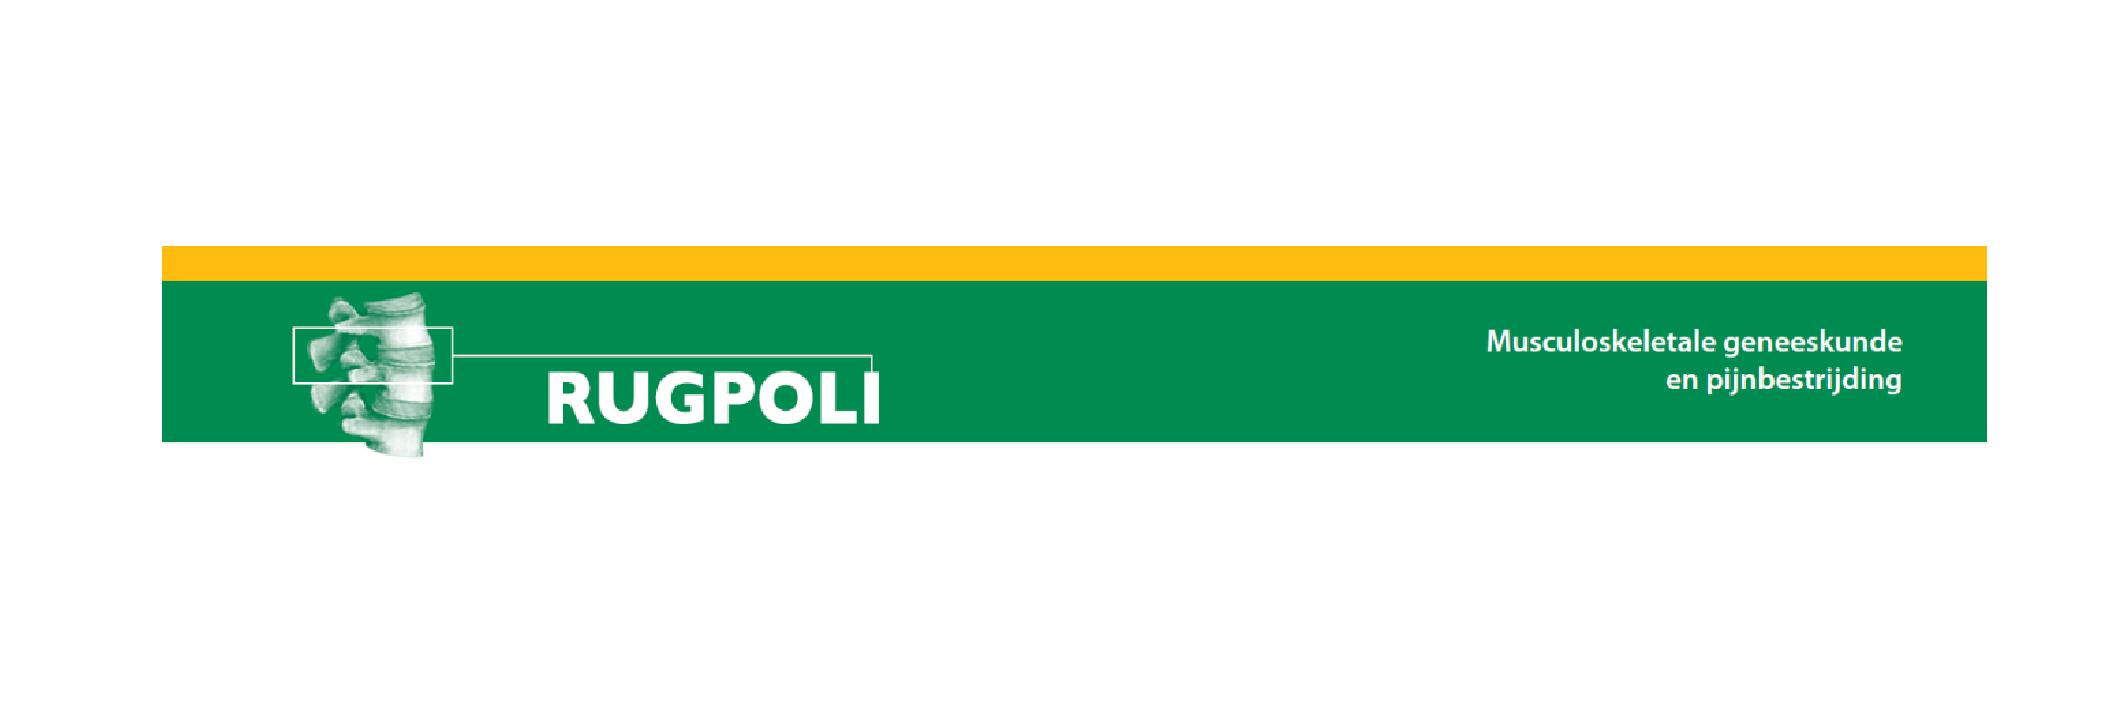 Rugpoli logo